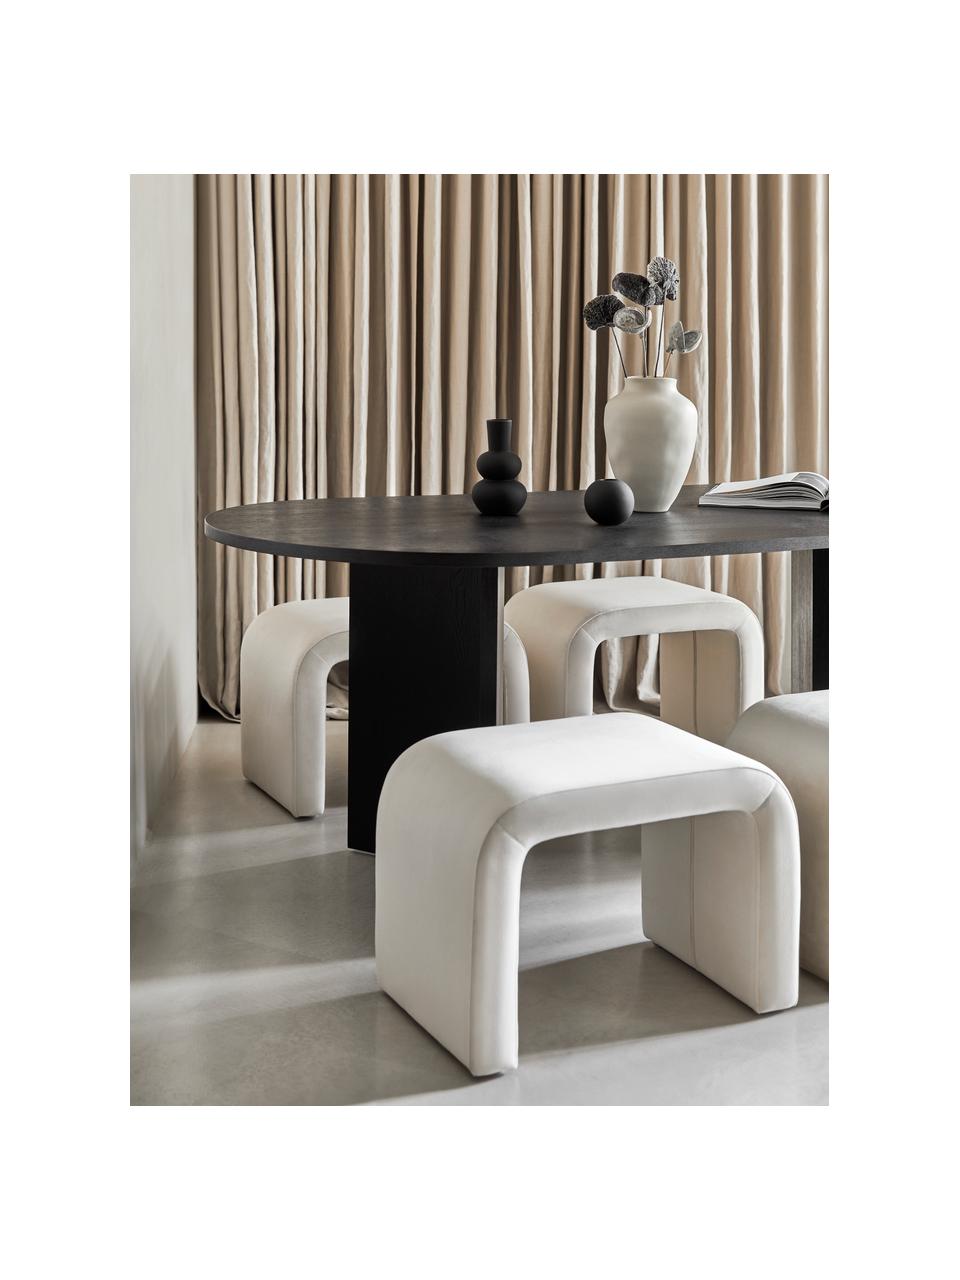 Dřevěný oválný jídelní stůl Toni, 200 x 90 cm, Lakovaná MDF deska (dřevovláknitá deska střední hustoty) s dubovou dýhou, Dubové dřevo, černě lakované, Š 200 cm, H 90 cm